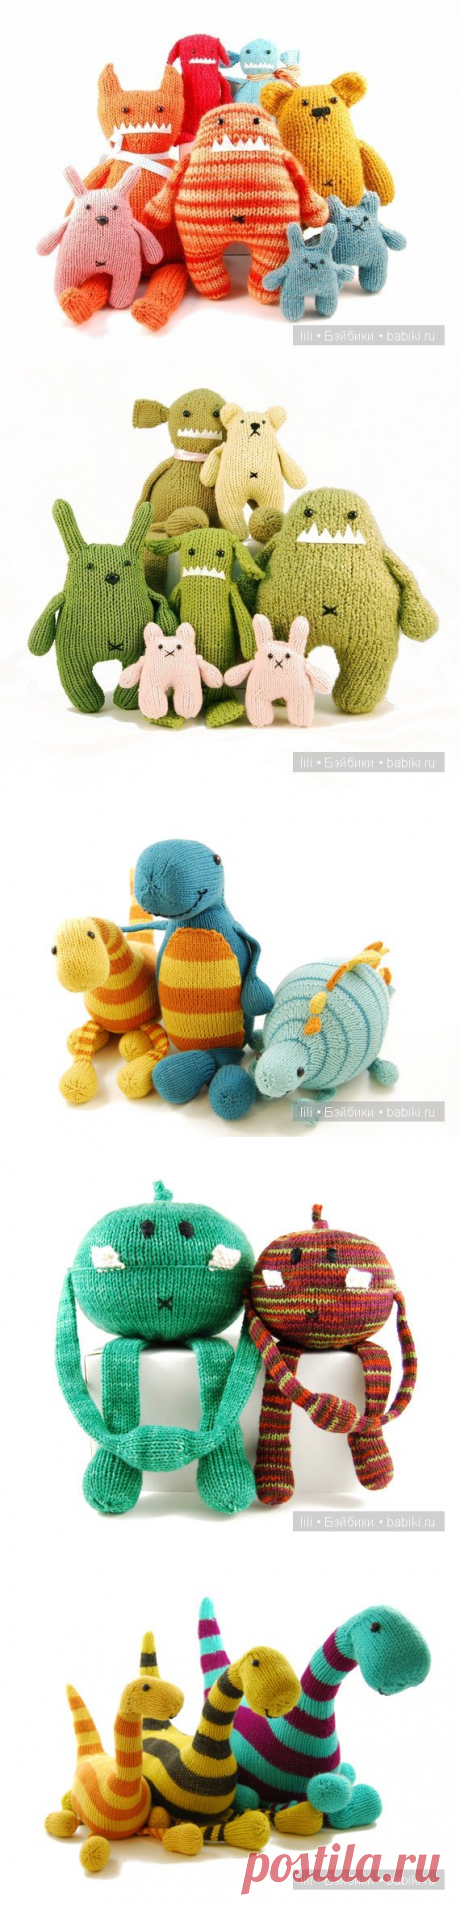 Вязанные маленькие монстрики - авторские игрушки от Rebecca Danger / Мишки Тедди (Teddy Bear) - фото, картинки, открытки / Бэйбики. Куклы фото. Одежда для кукол